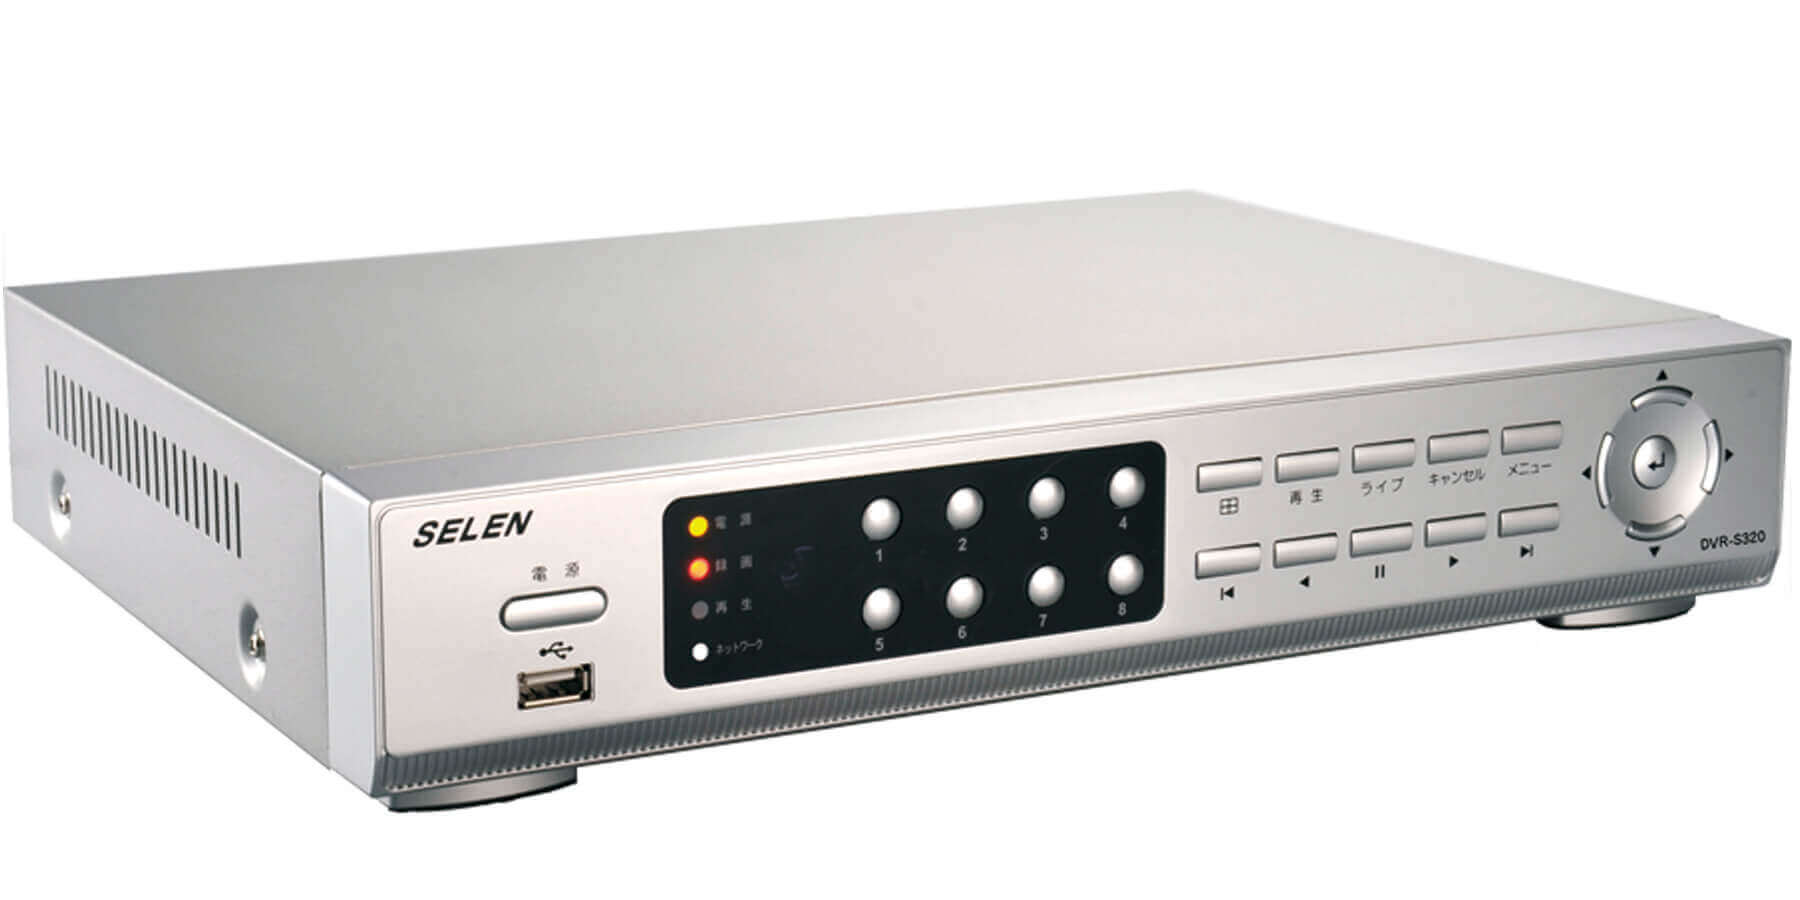 インターネット対応防犯システム用ハードディスクレコーダー（1TB×2）DVR-S320